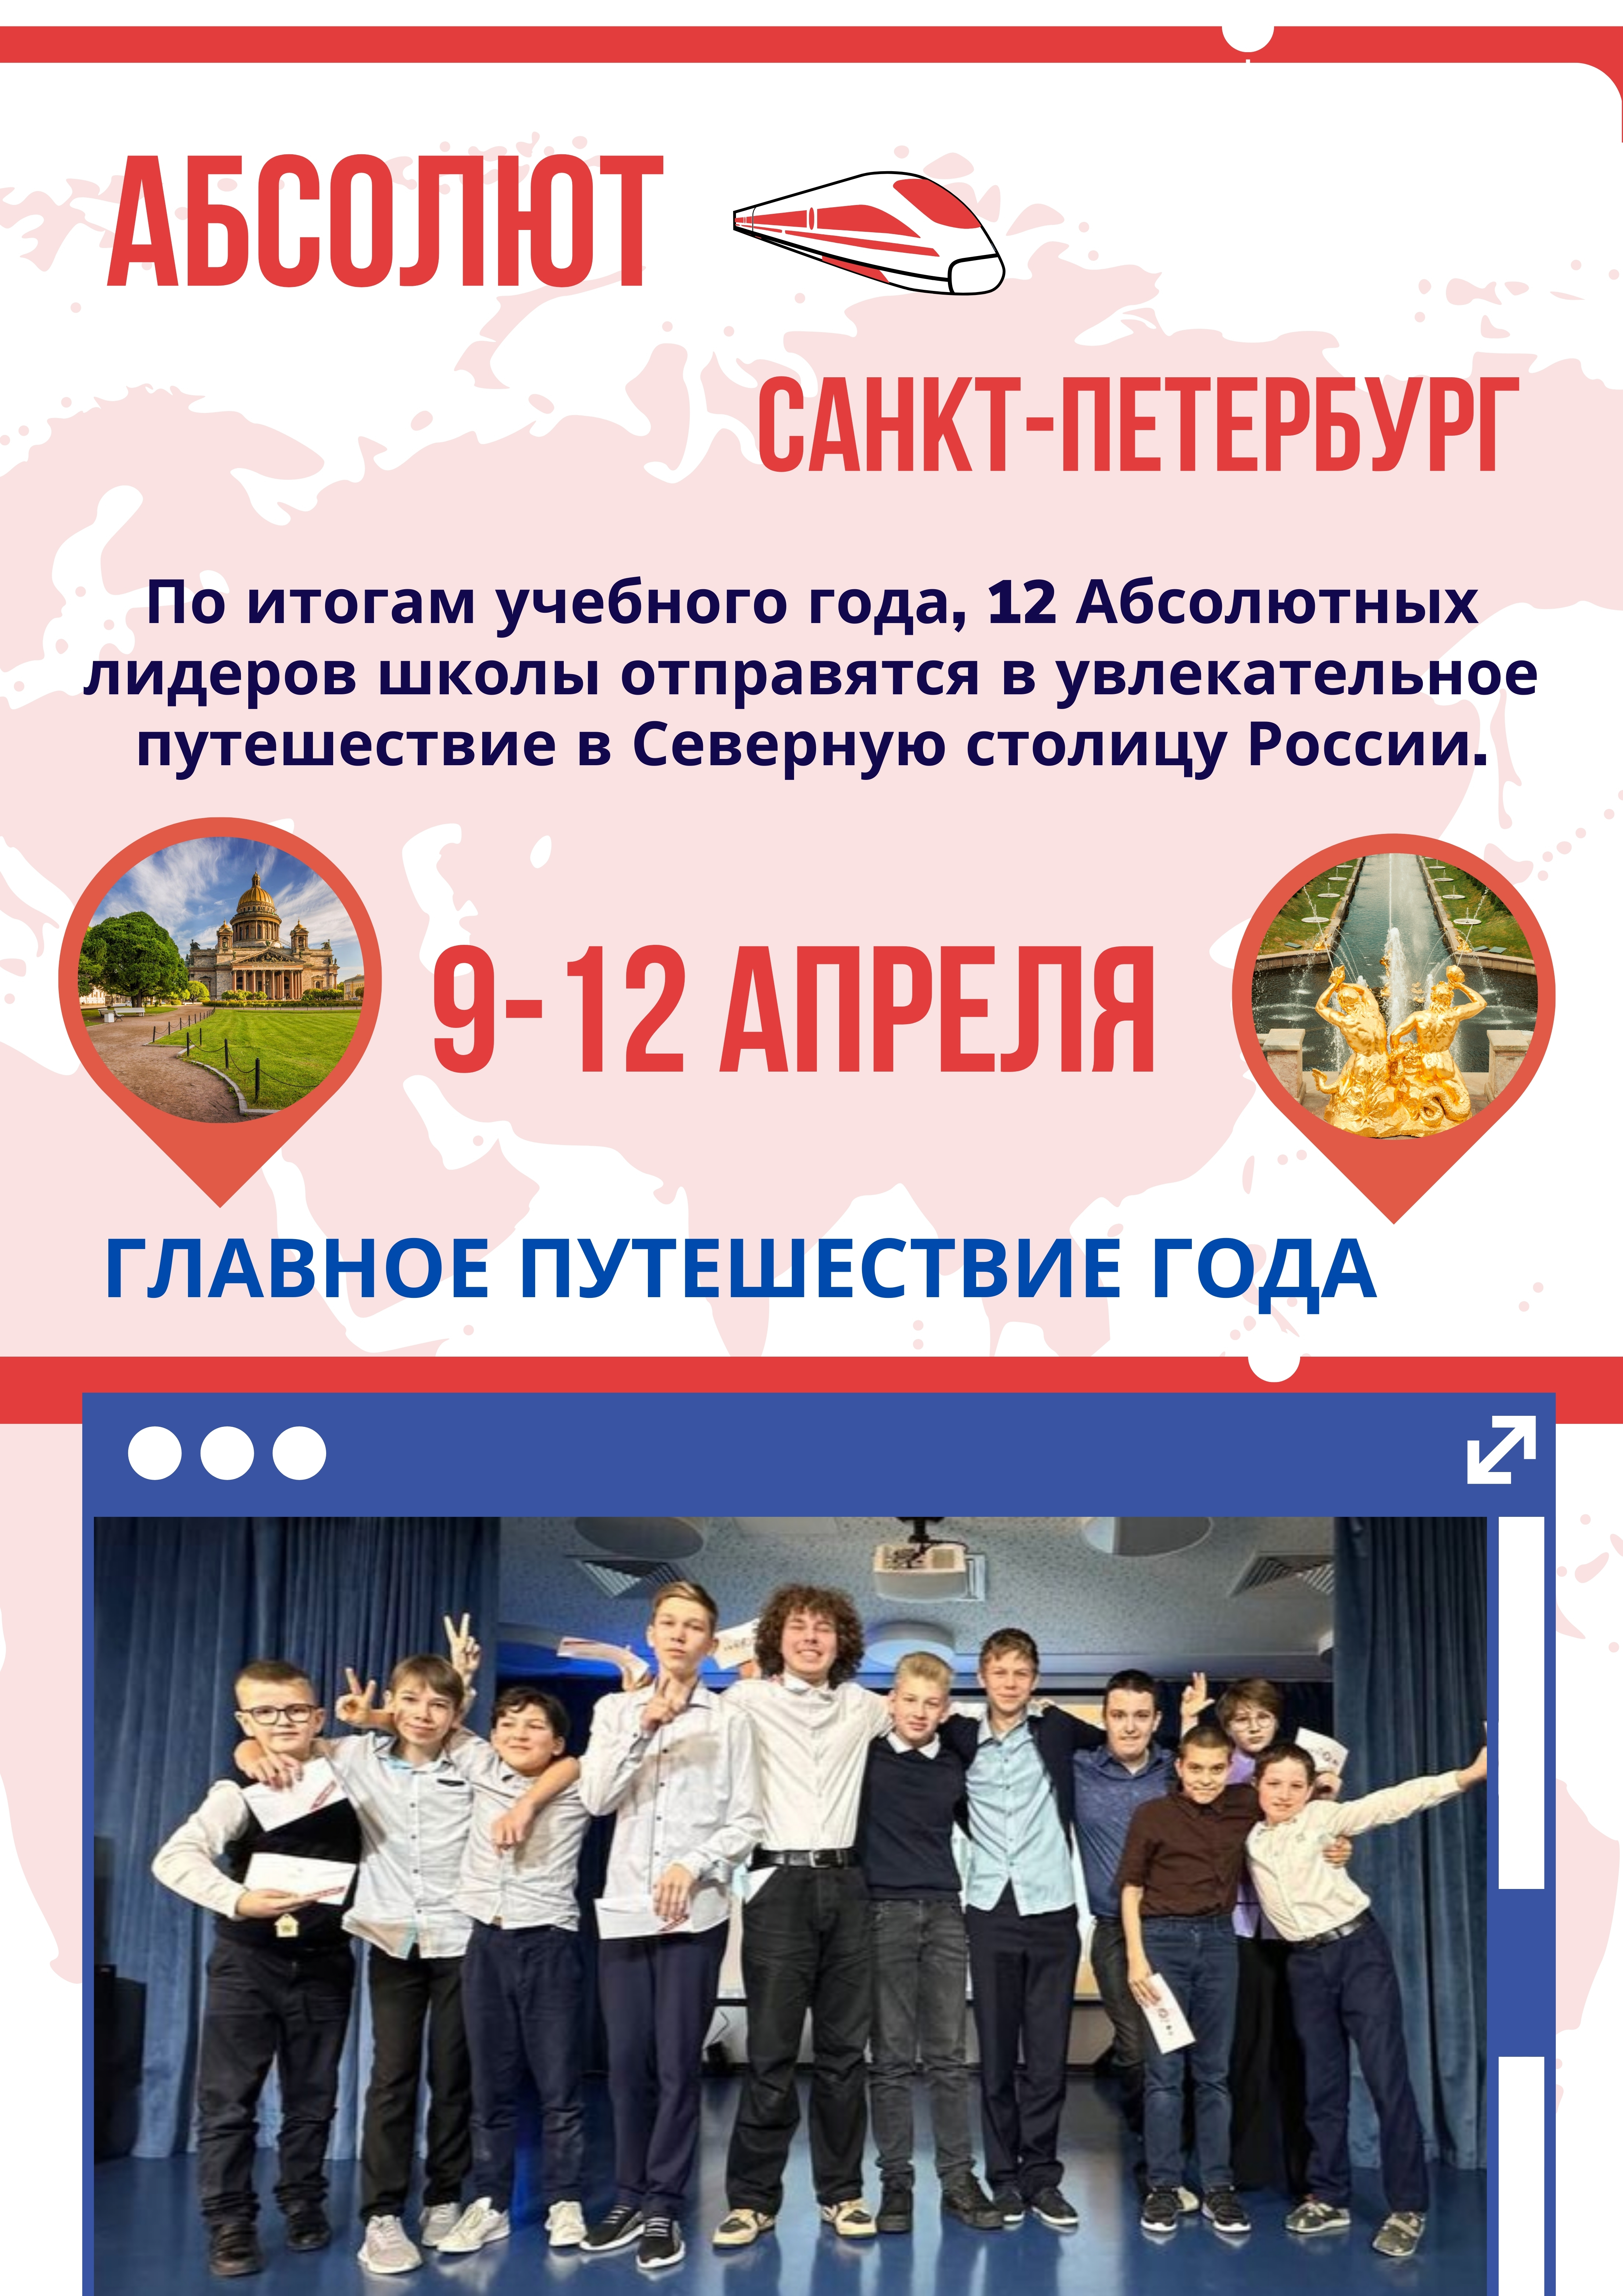 Главное путешествие года: поездка в Санкт-Петербург 